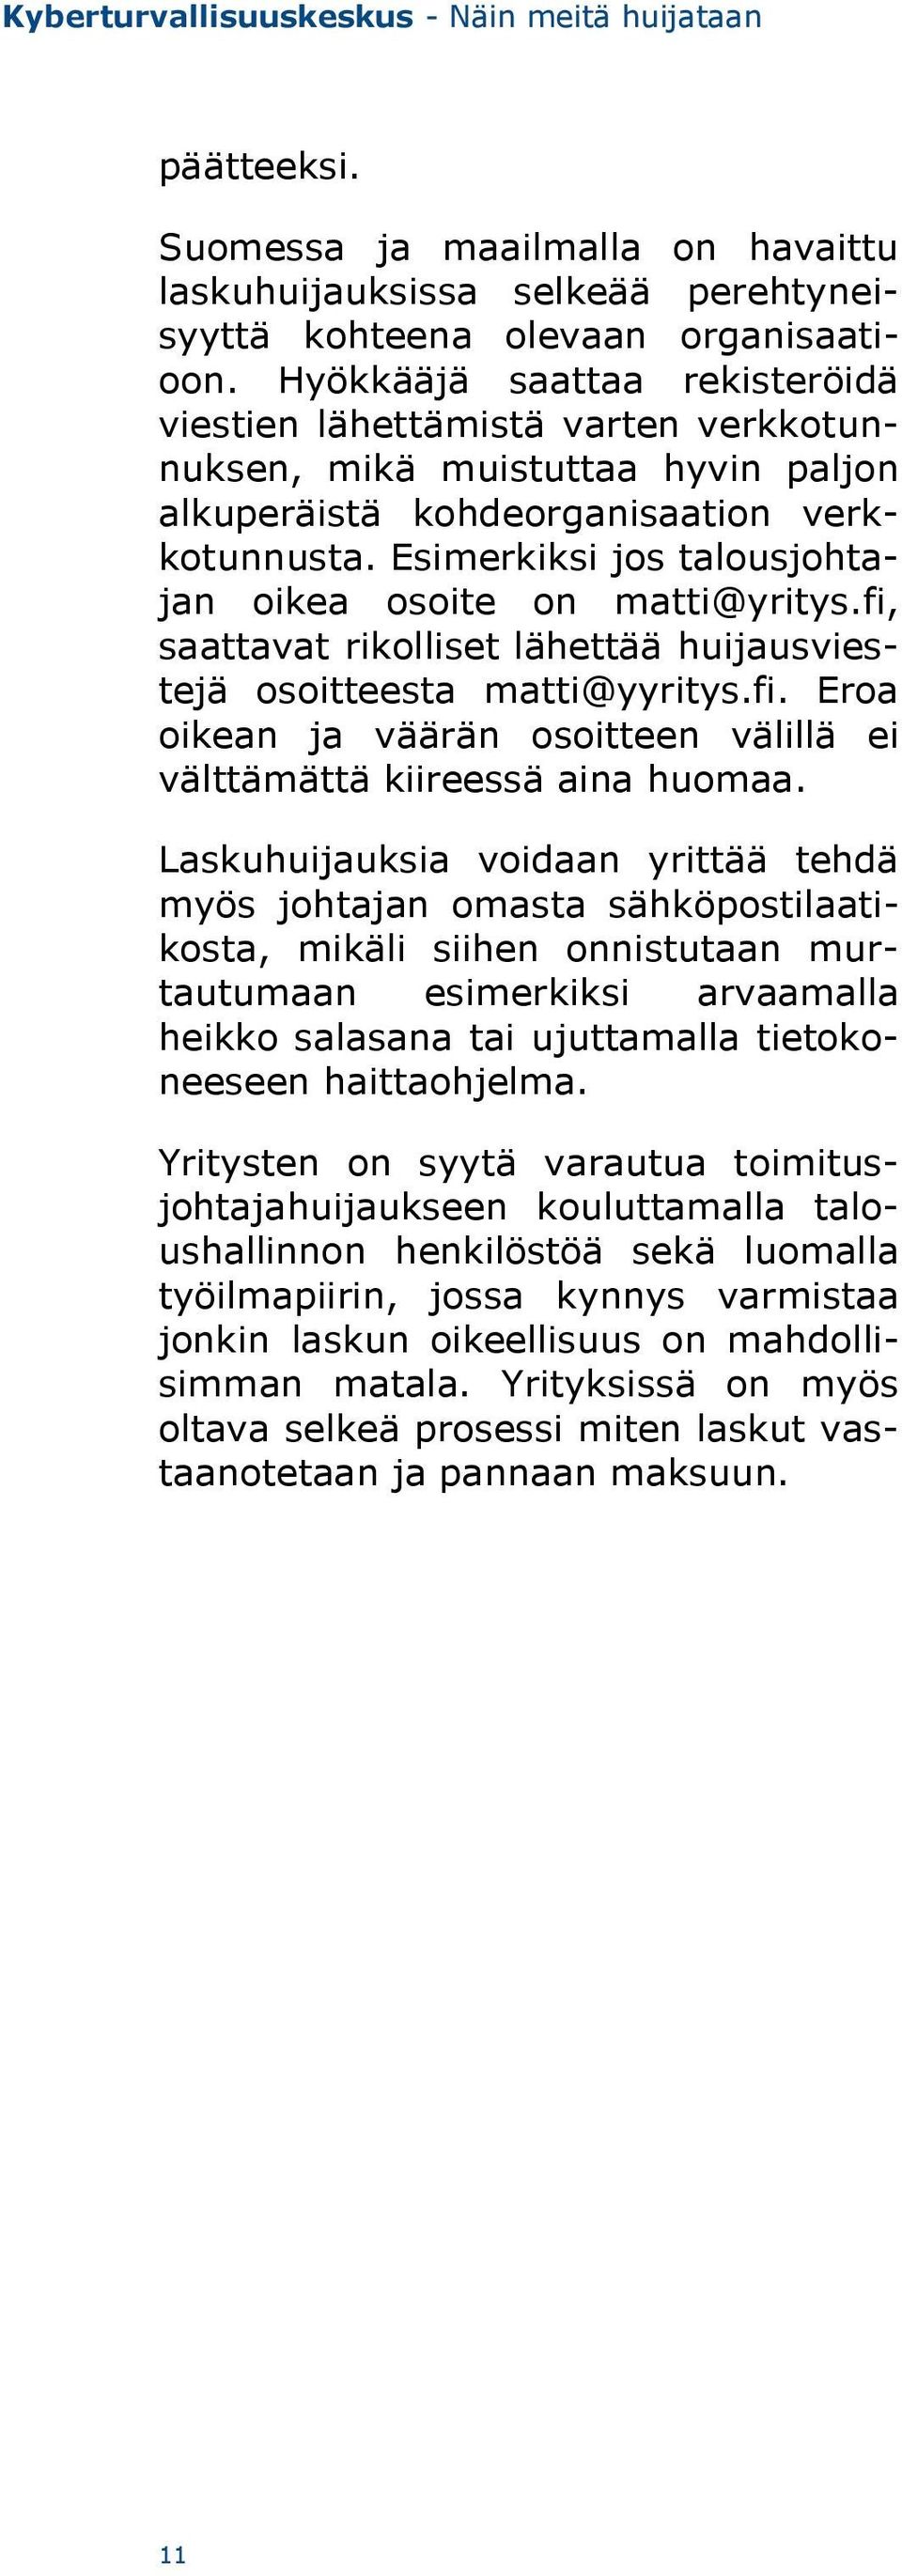 Esimerkiksi jos talousjohtajan oikea osoite on matti@yritys.fi, saattavat rikolliset lähettää huijausviestejä osoitteesta matti@yyritys.fi. Eroa oikean ja väärän osoitteen välillä ei välttämättä kiireessä aina huomaa.